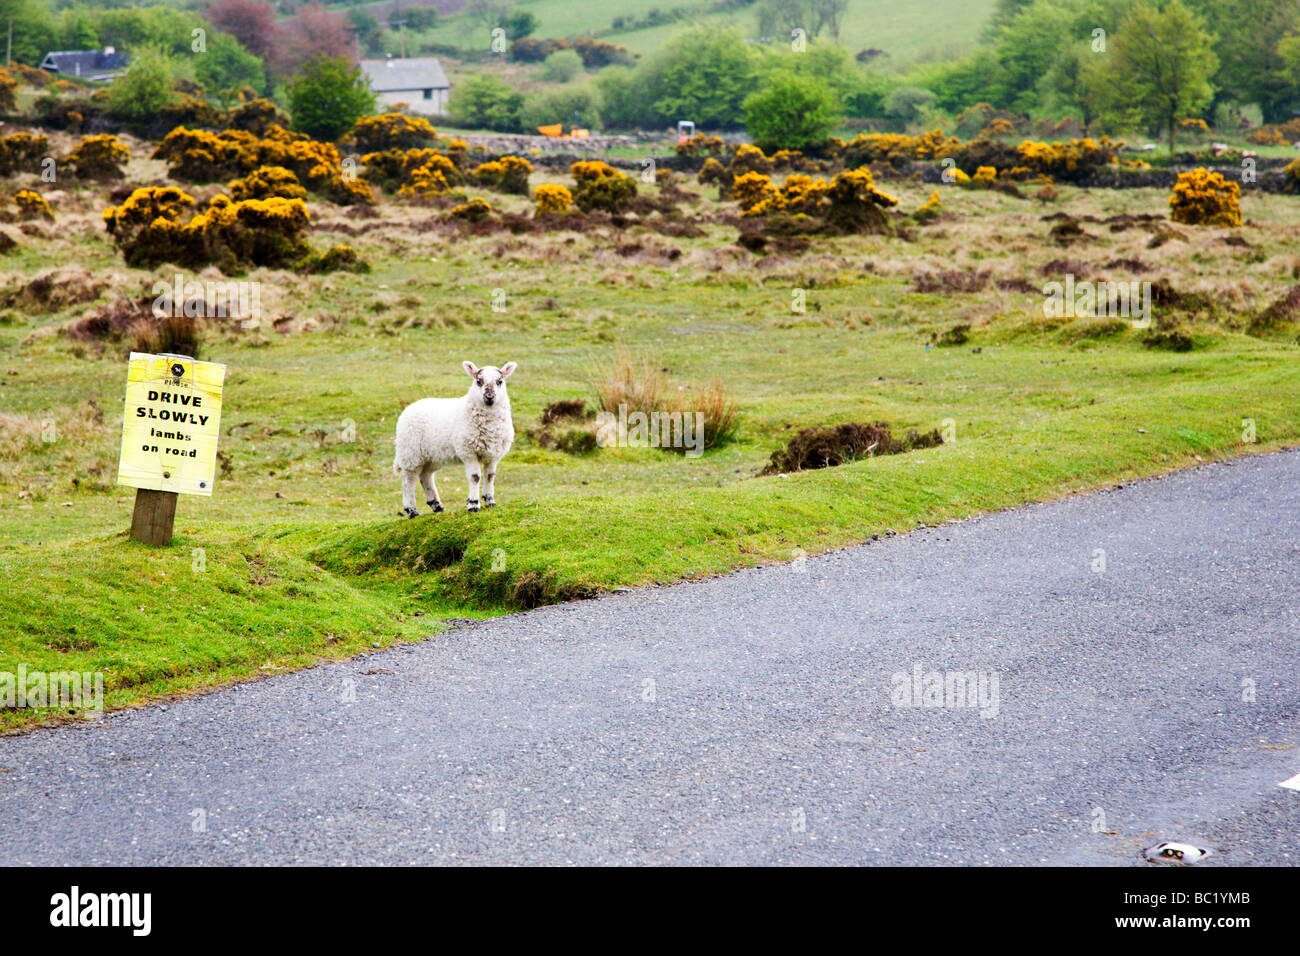 Conduire lentement près de l'agneau agneaux on road sign Angleterre Dartmoor Banque D'Images